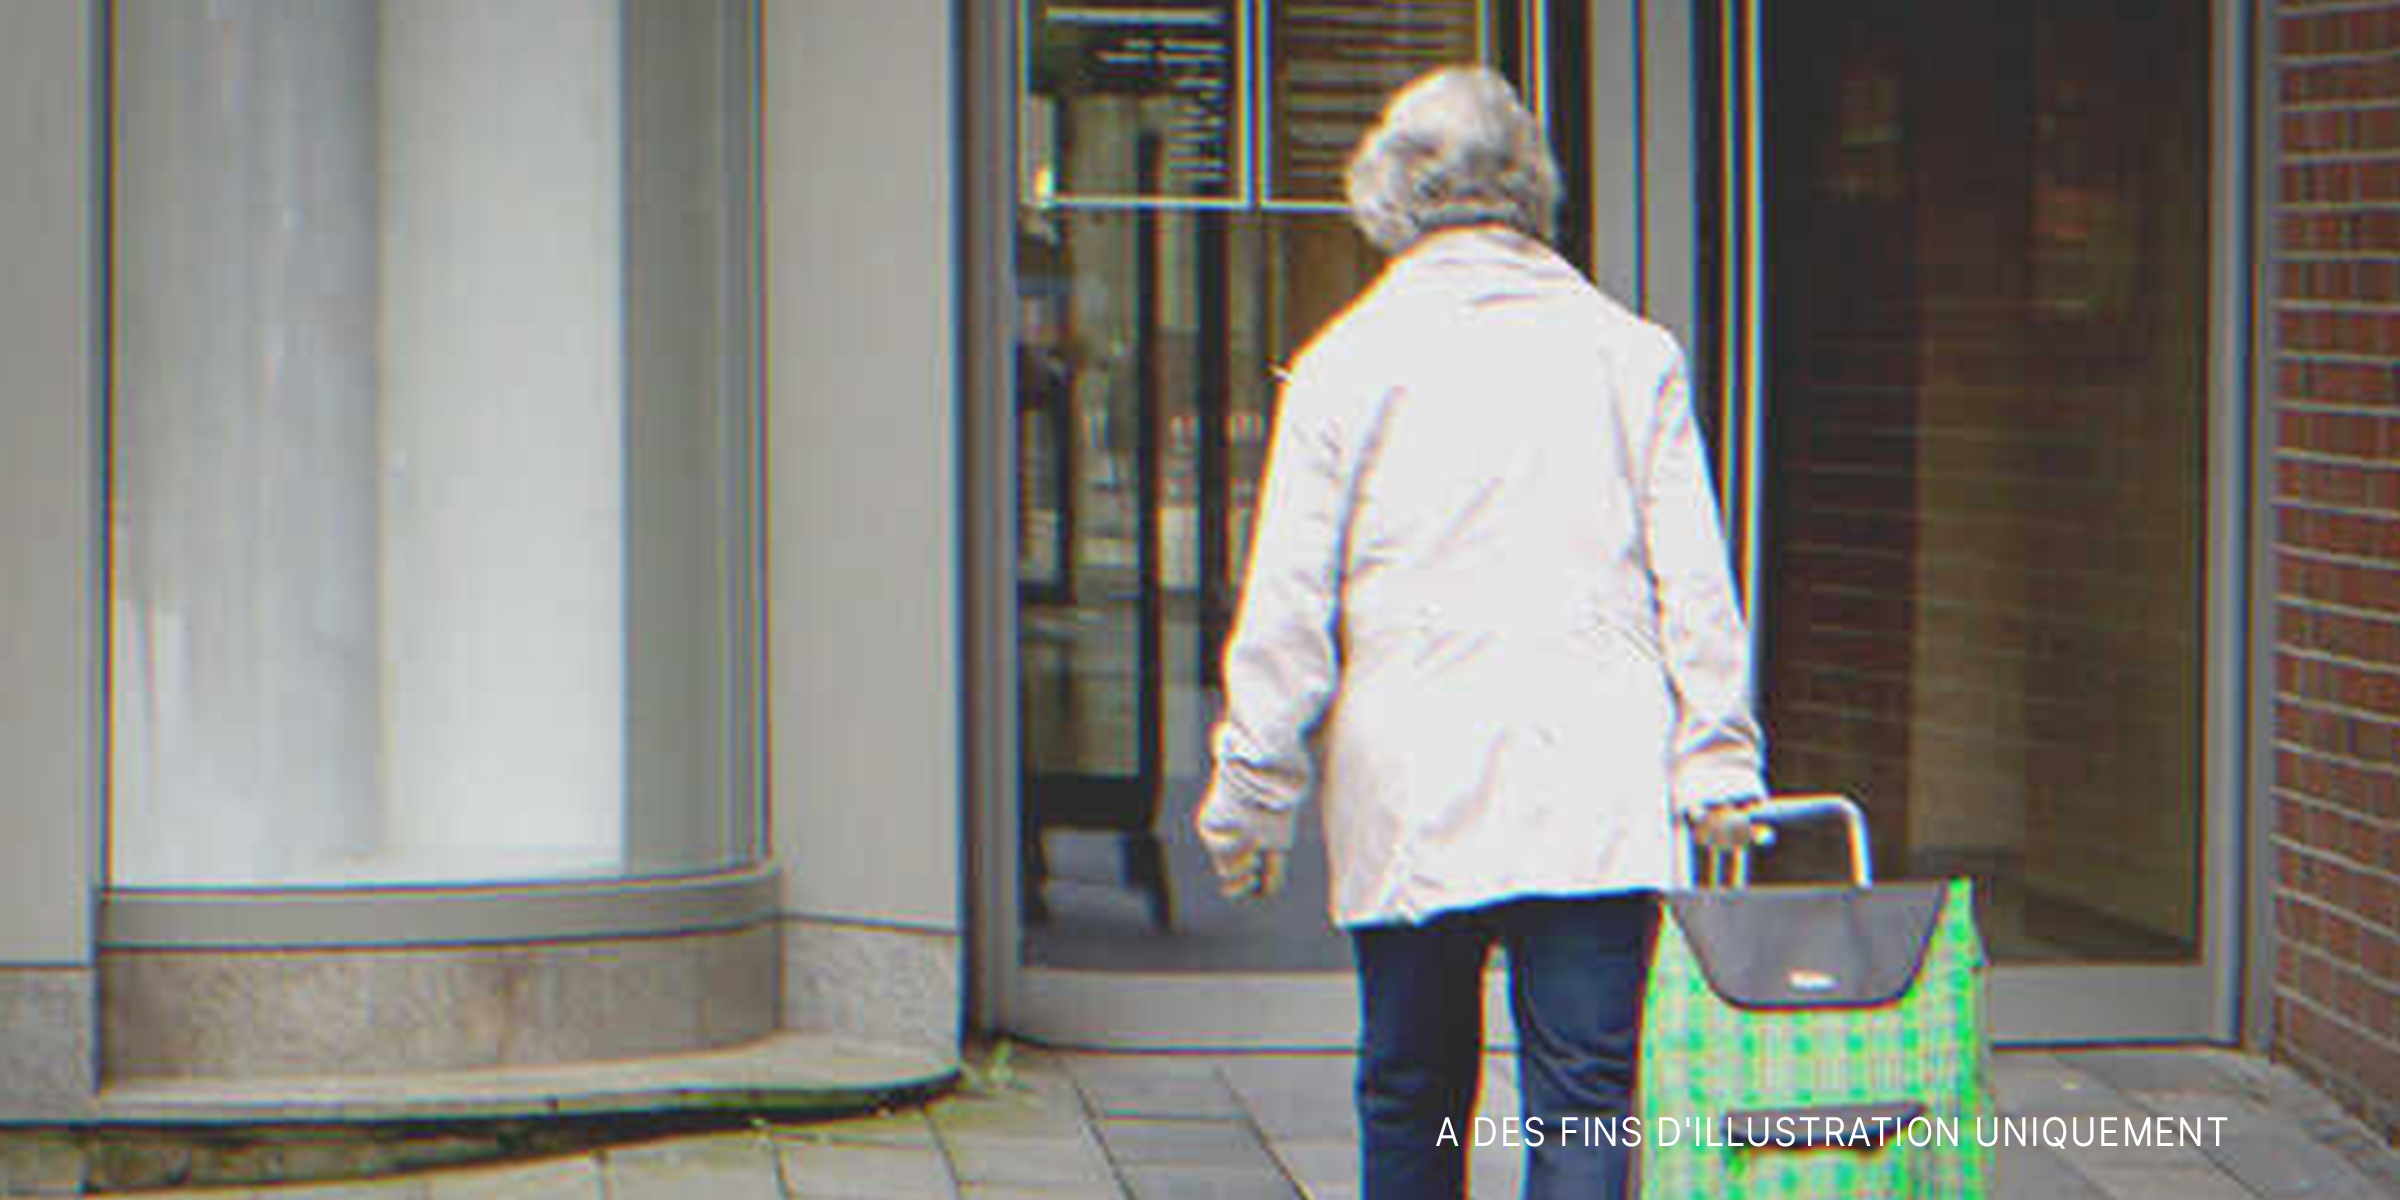 Une personne âgée entrant dans un bâtiment | Source : Shutterstock